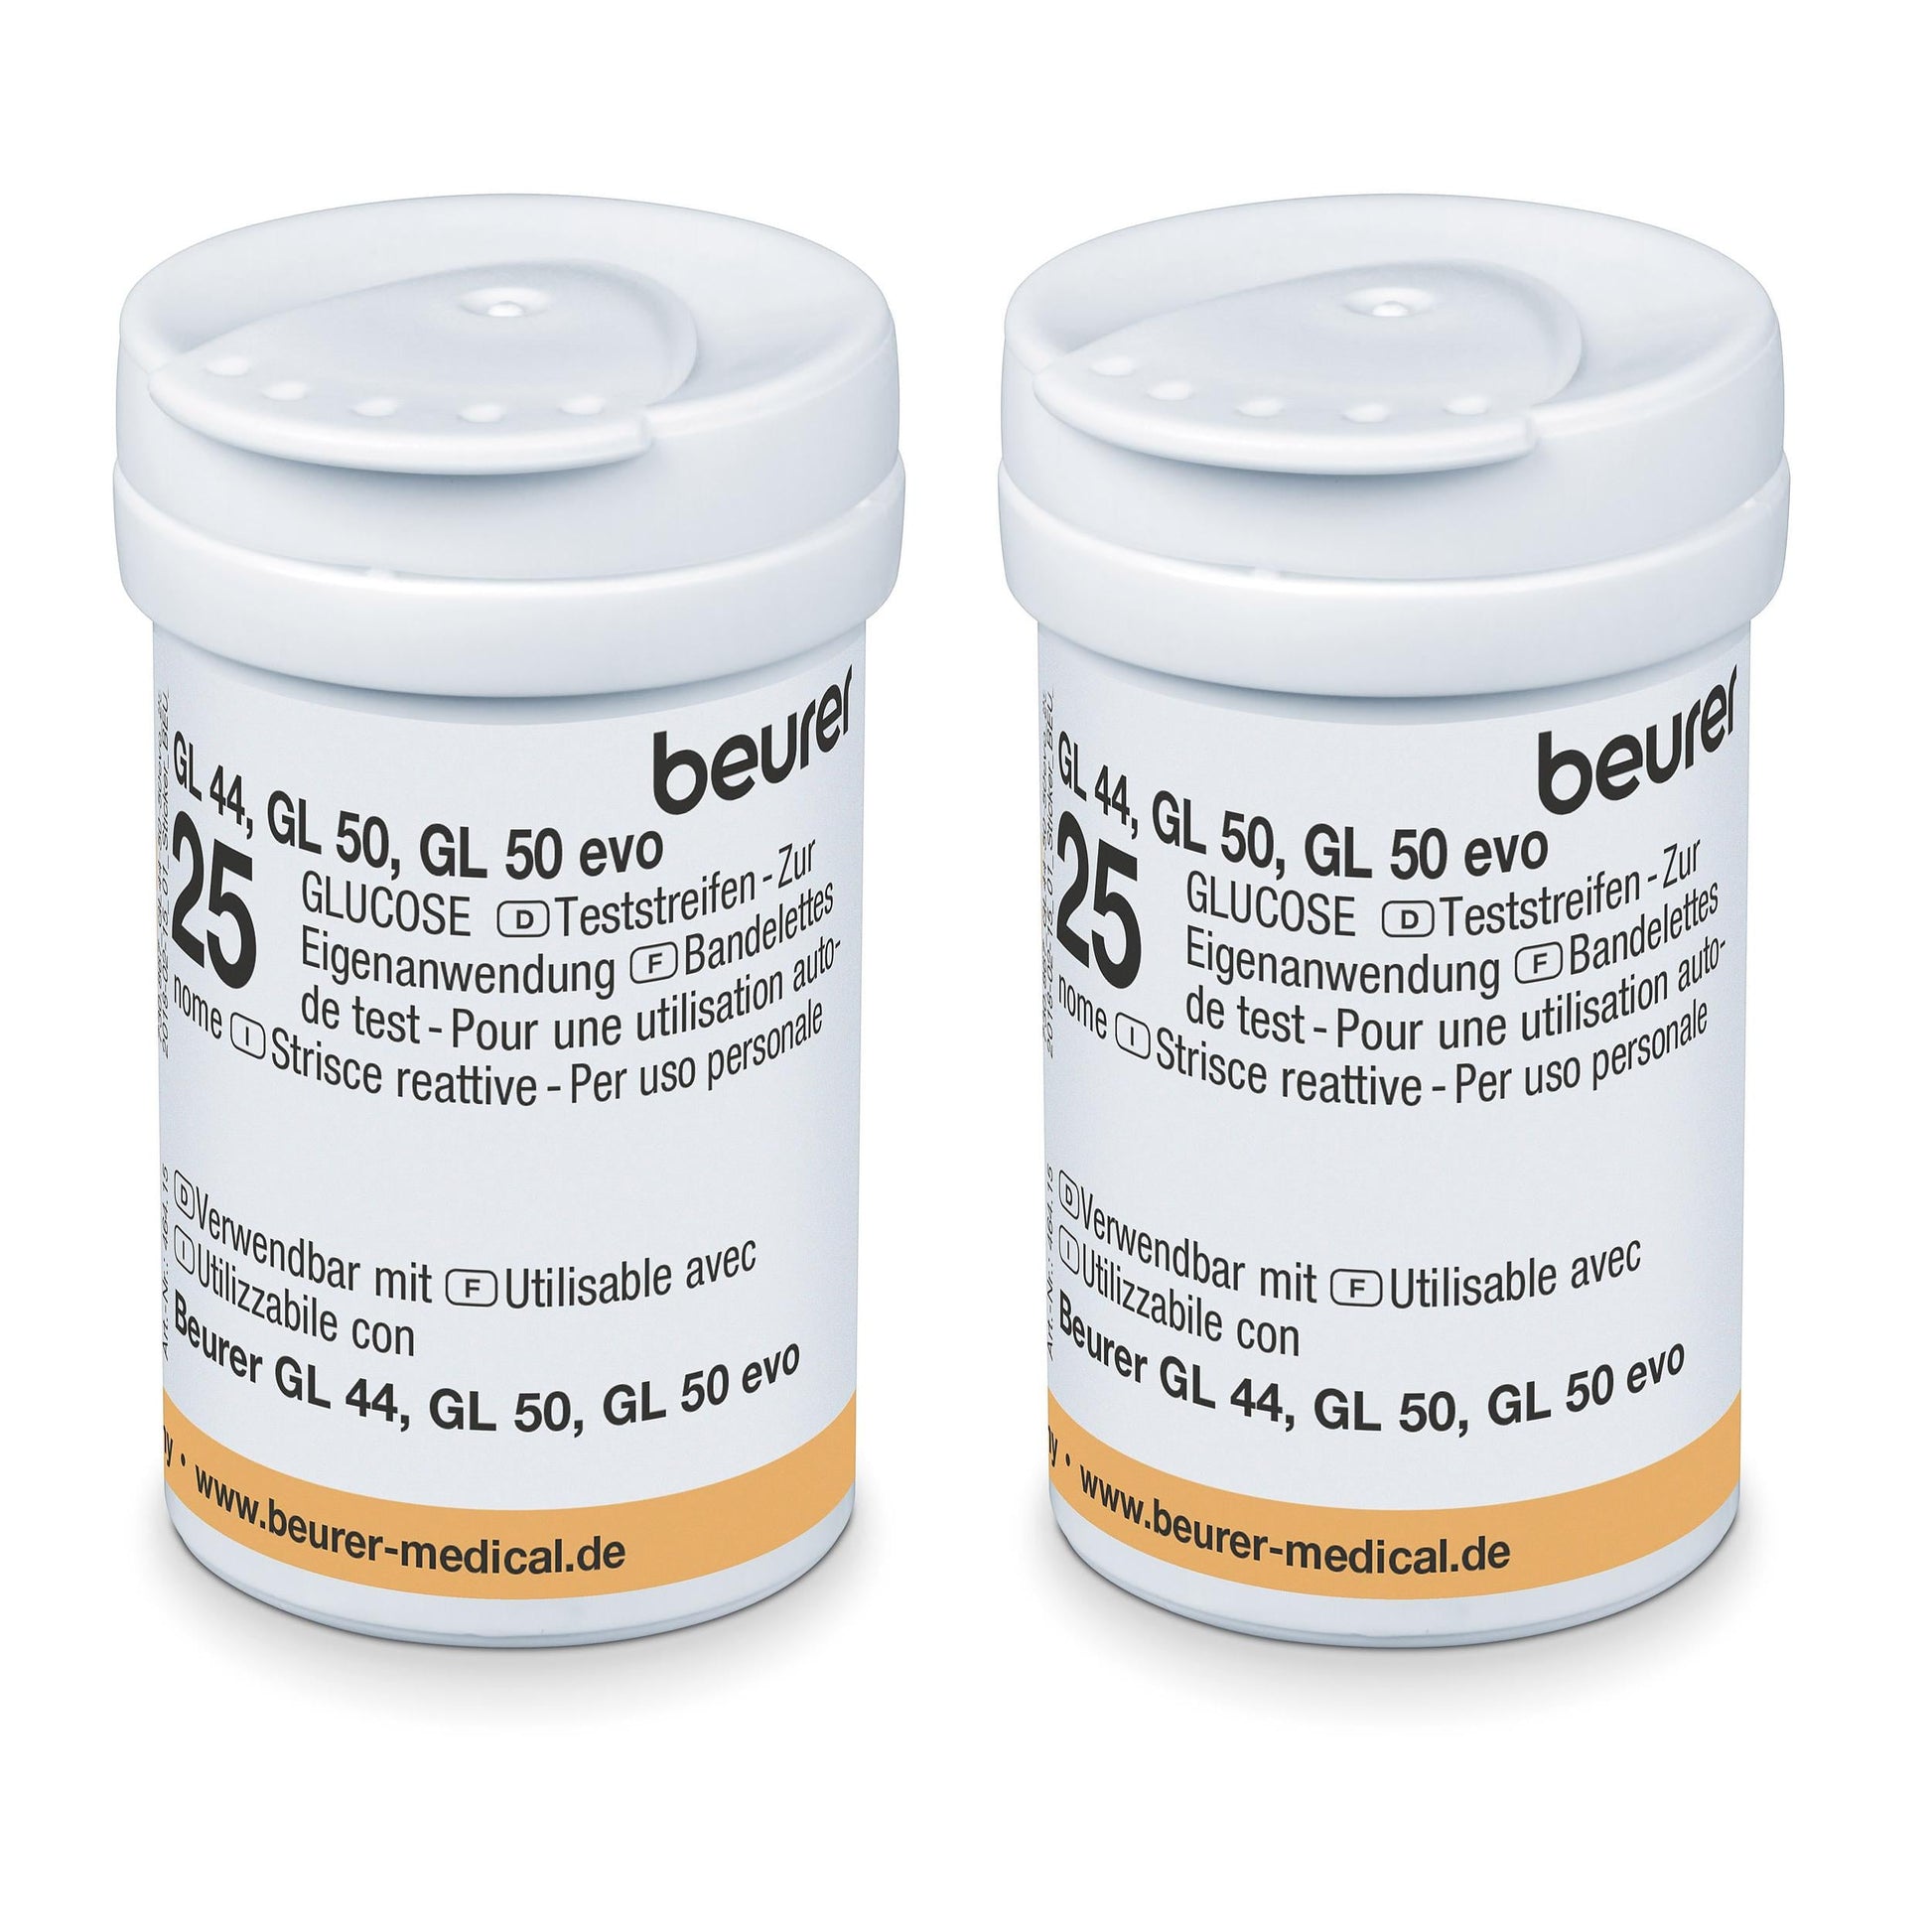 Zwei Beurer GL 50 Evo Blutzuckermessgeräte mit Beurer Teststreifen GL 44/50/50 evo auf jeder Seite. Beschriftung mehrsprachig, Anzeige der Website beurer-medical.de. Weißer Hintergrund.